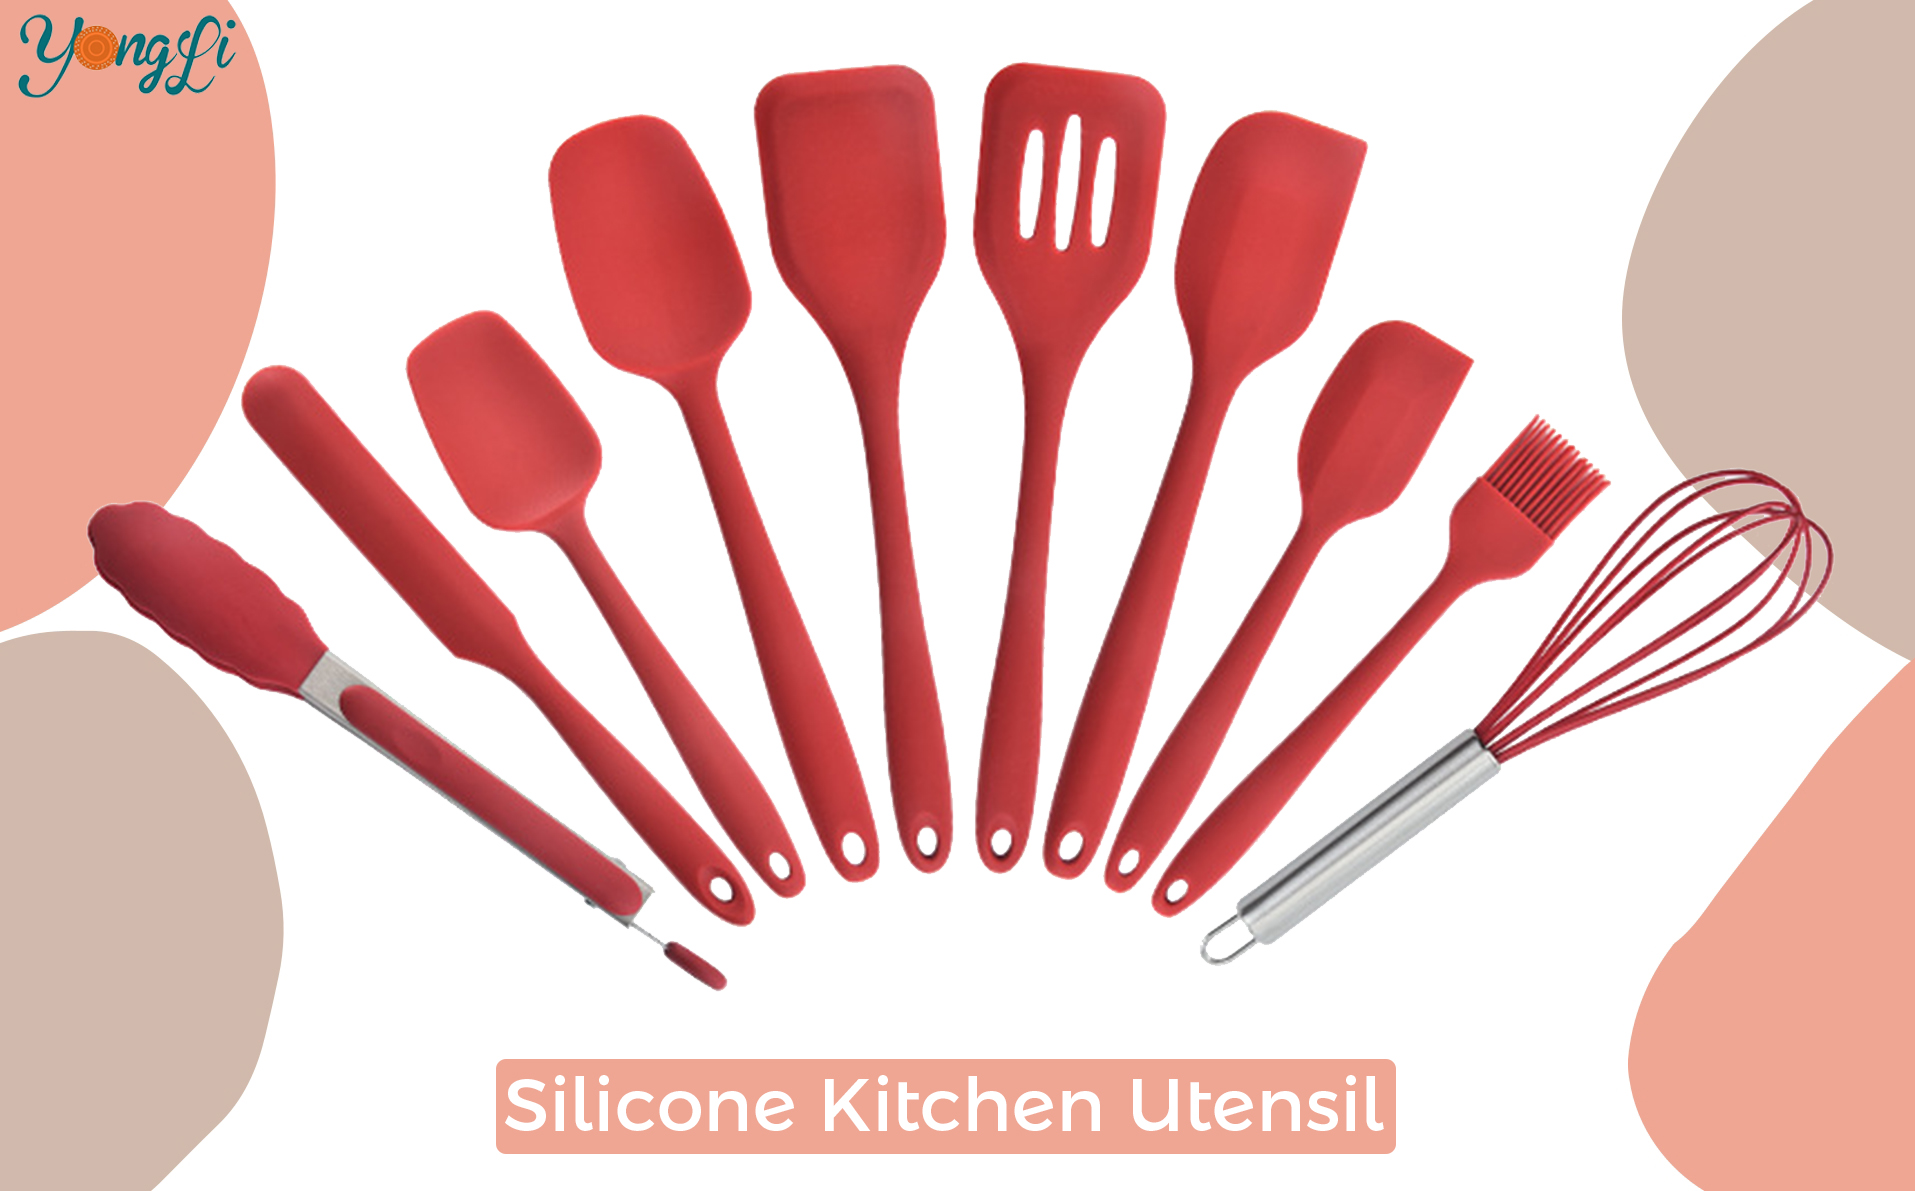 Tražite silikonski kuhinjski pribor?|Yongli